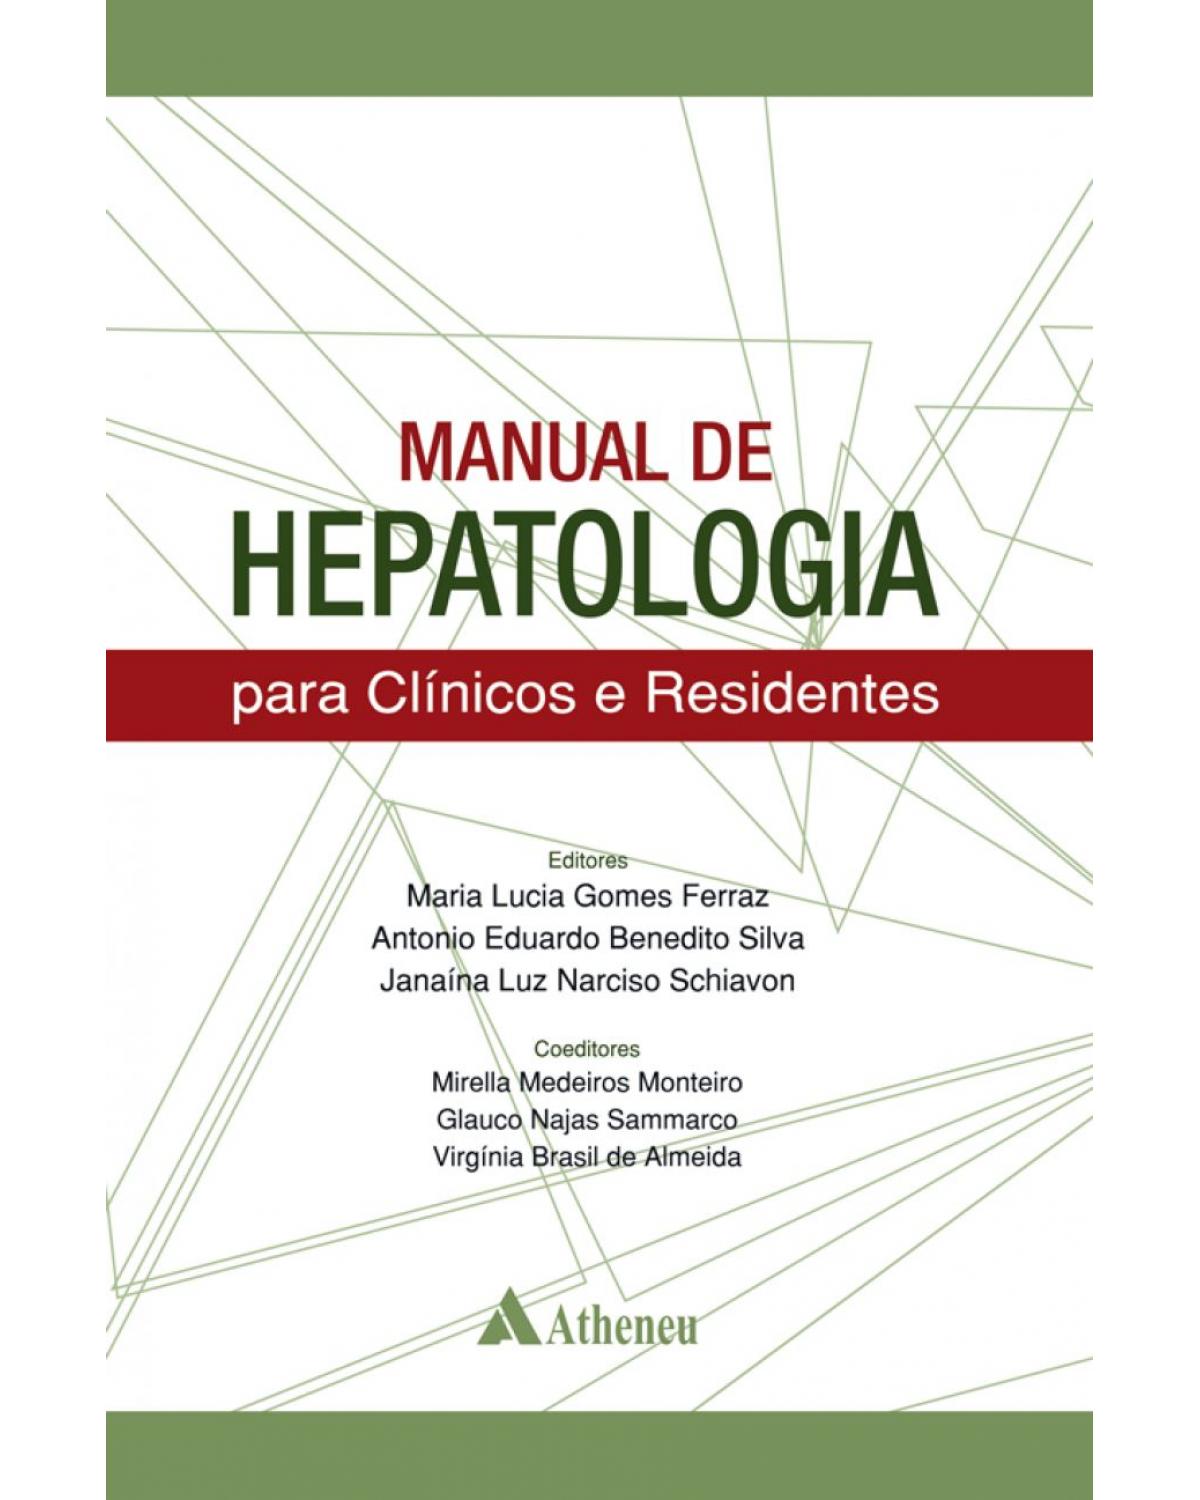 Manual de hepatologia - para clínicos e residentes - 1ª Edição | 2018